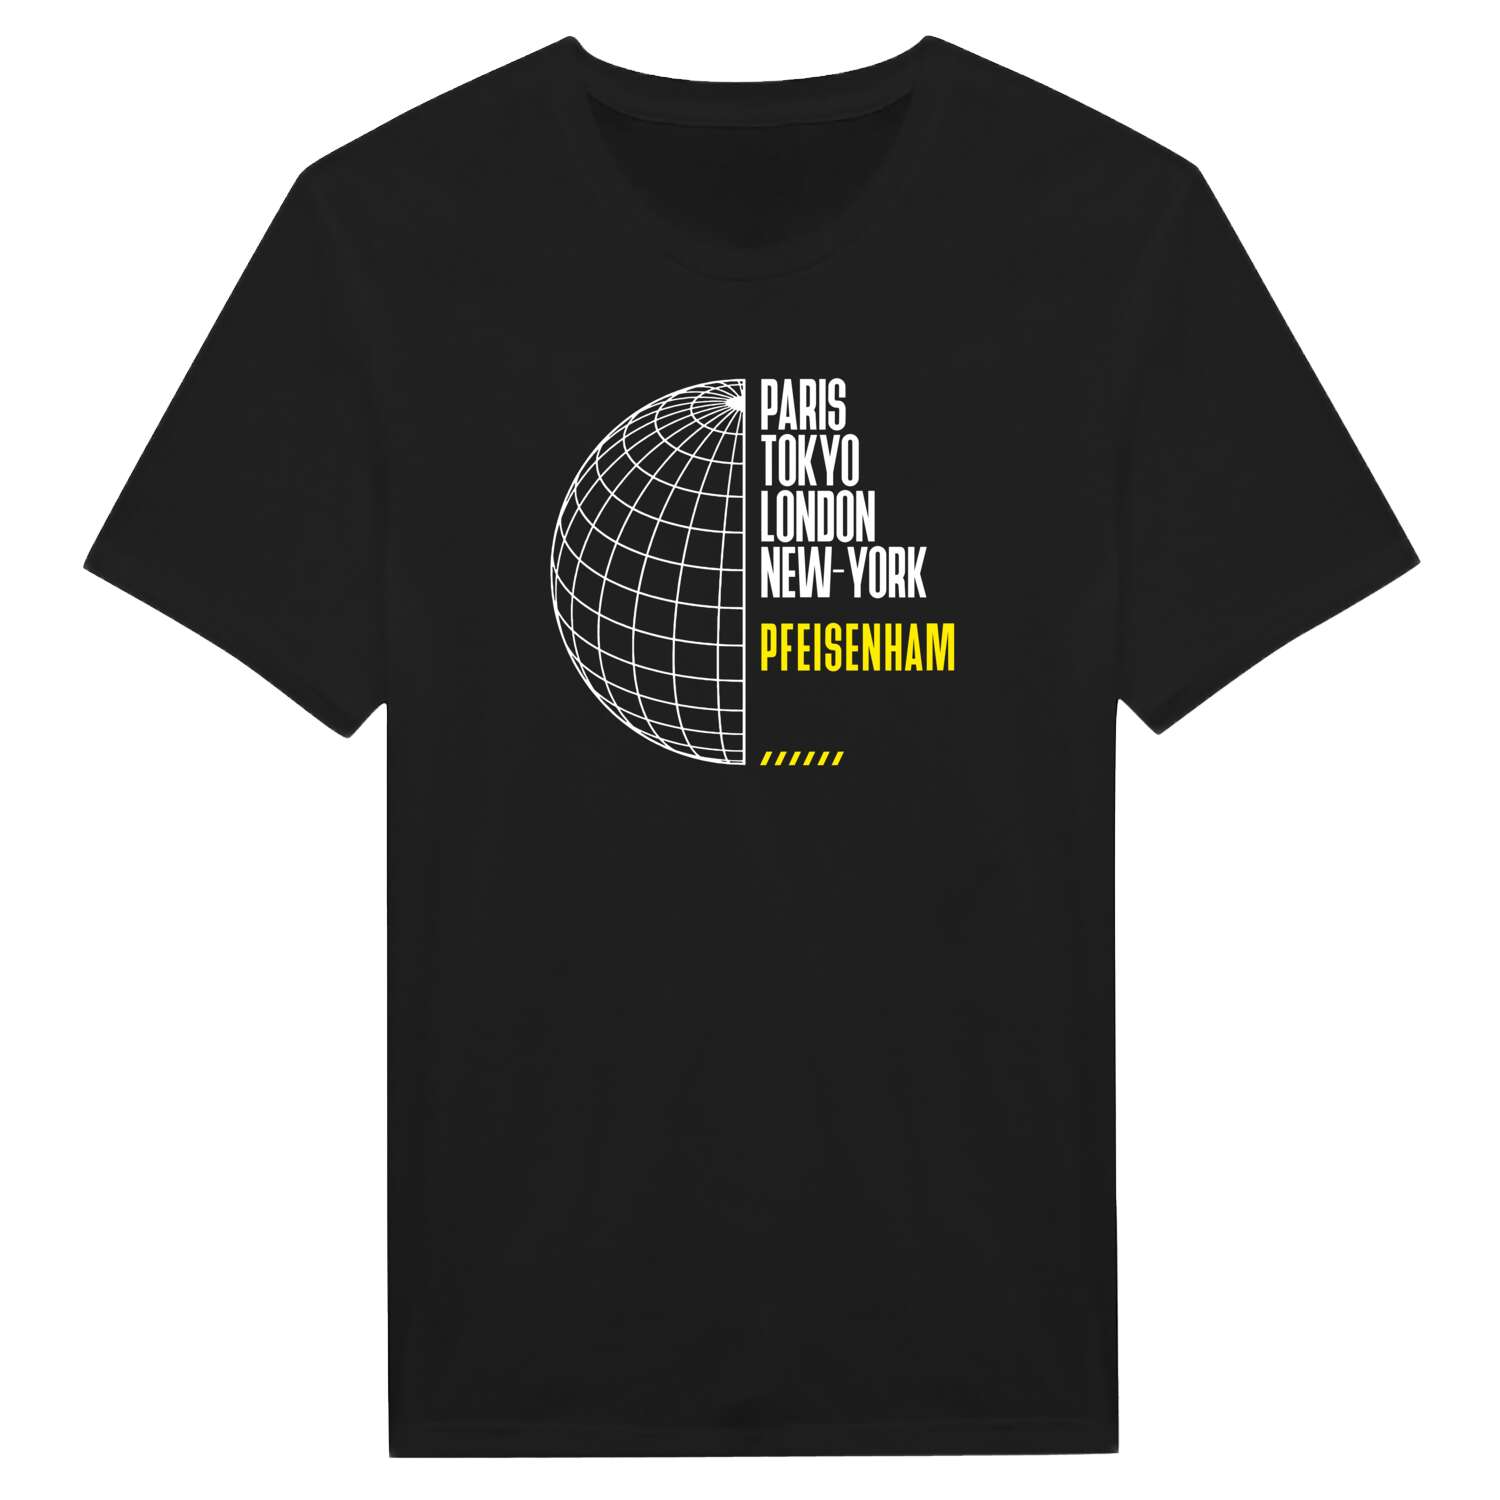 Pfeisenham T-Shirt »Paris Tokyo London«